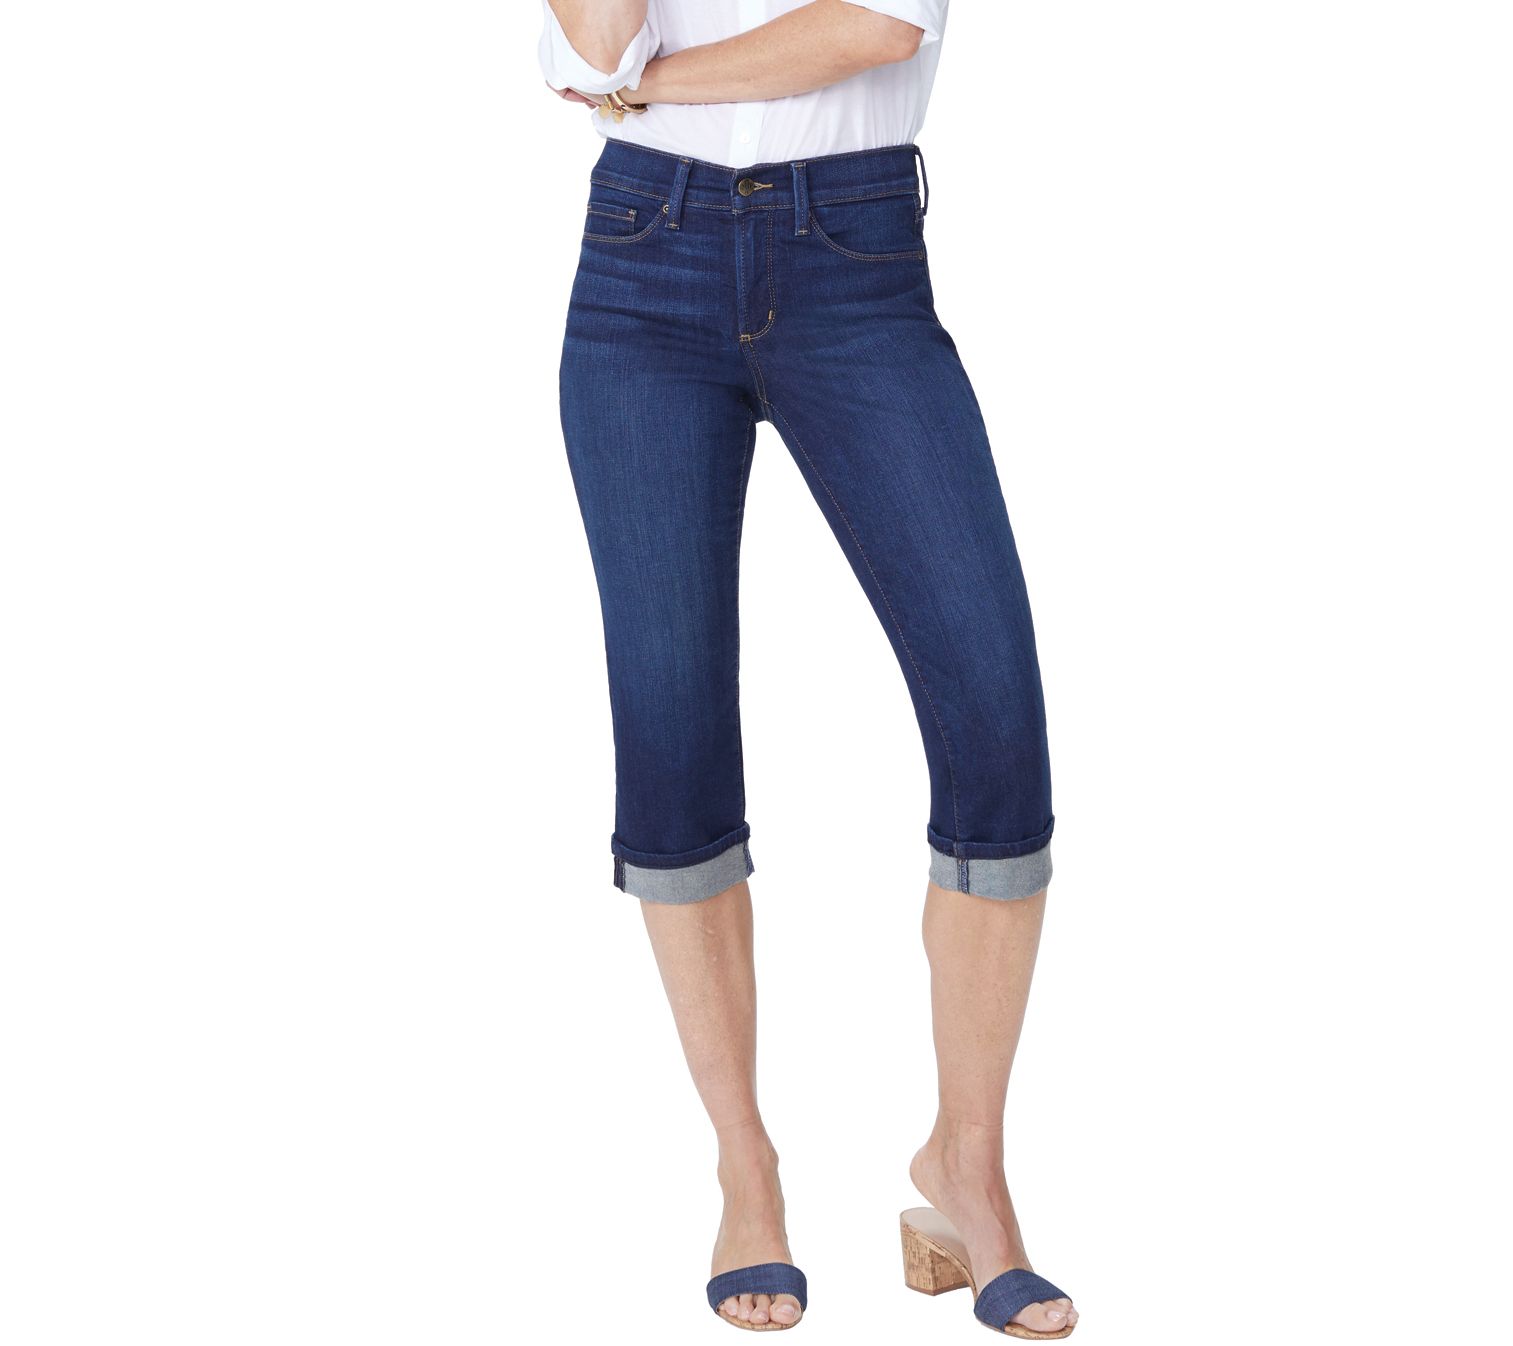 women's blue jeans